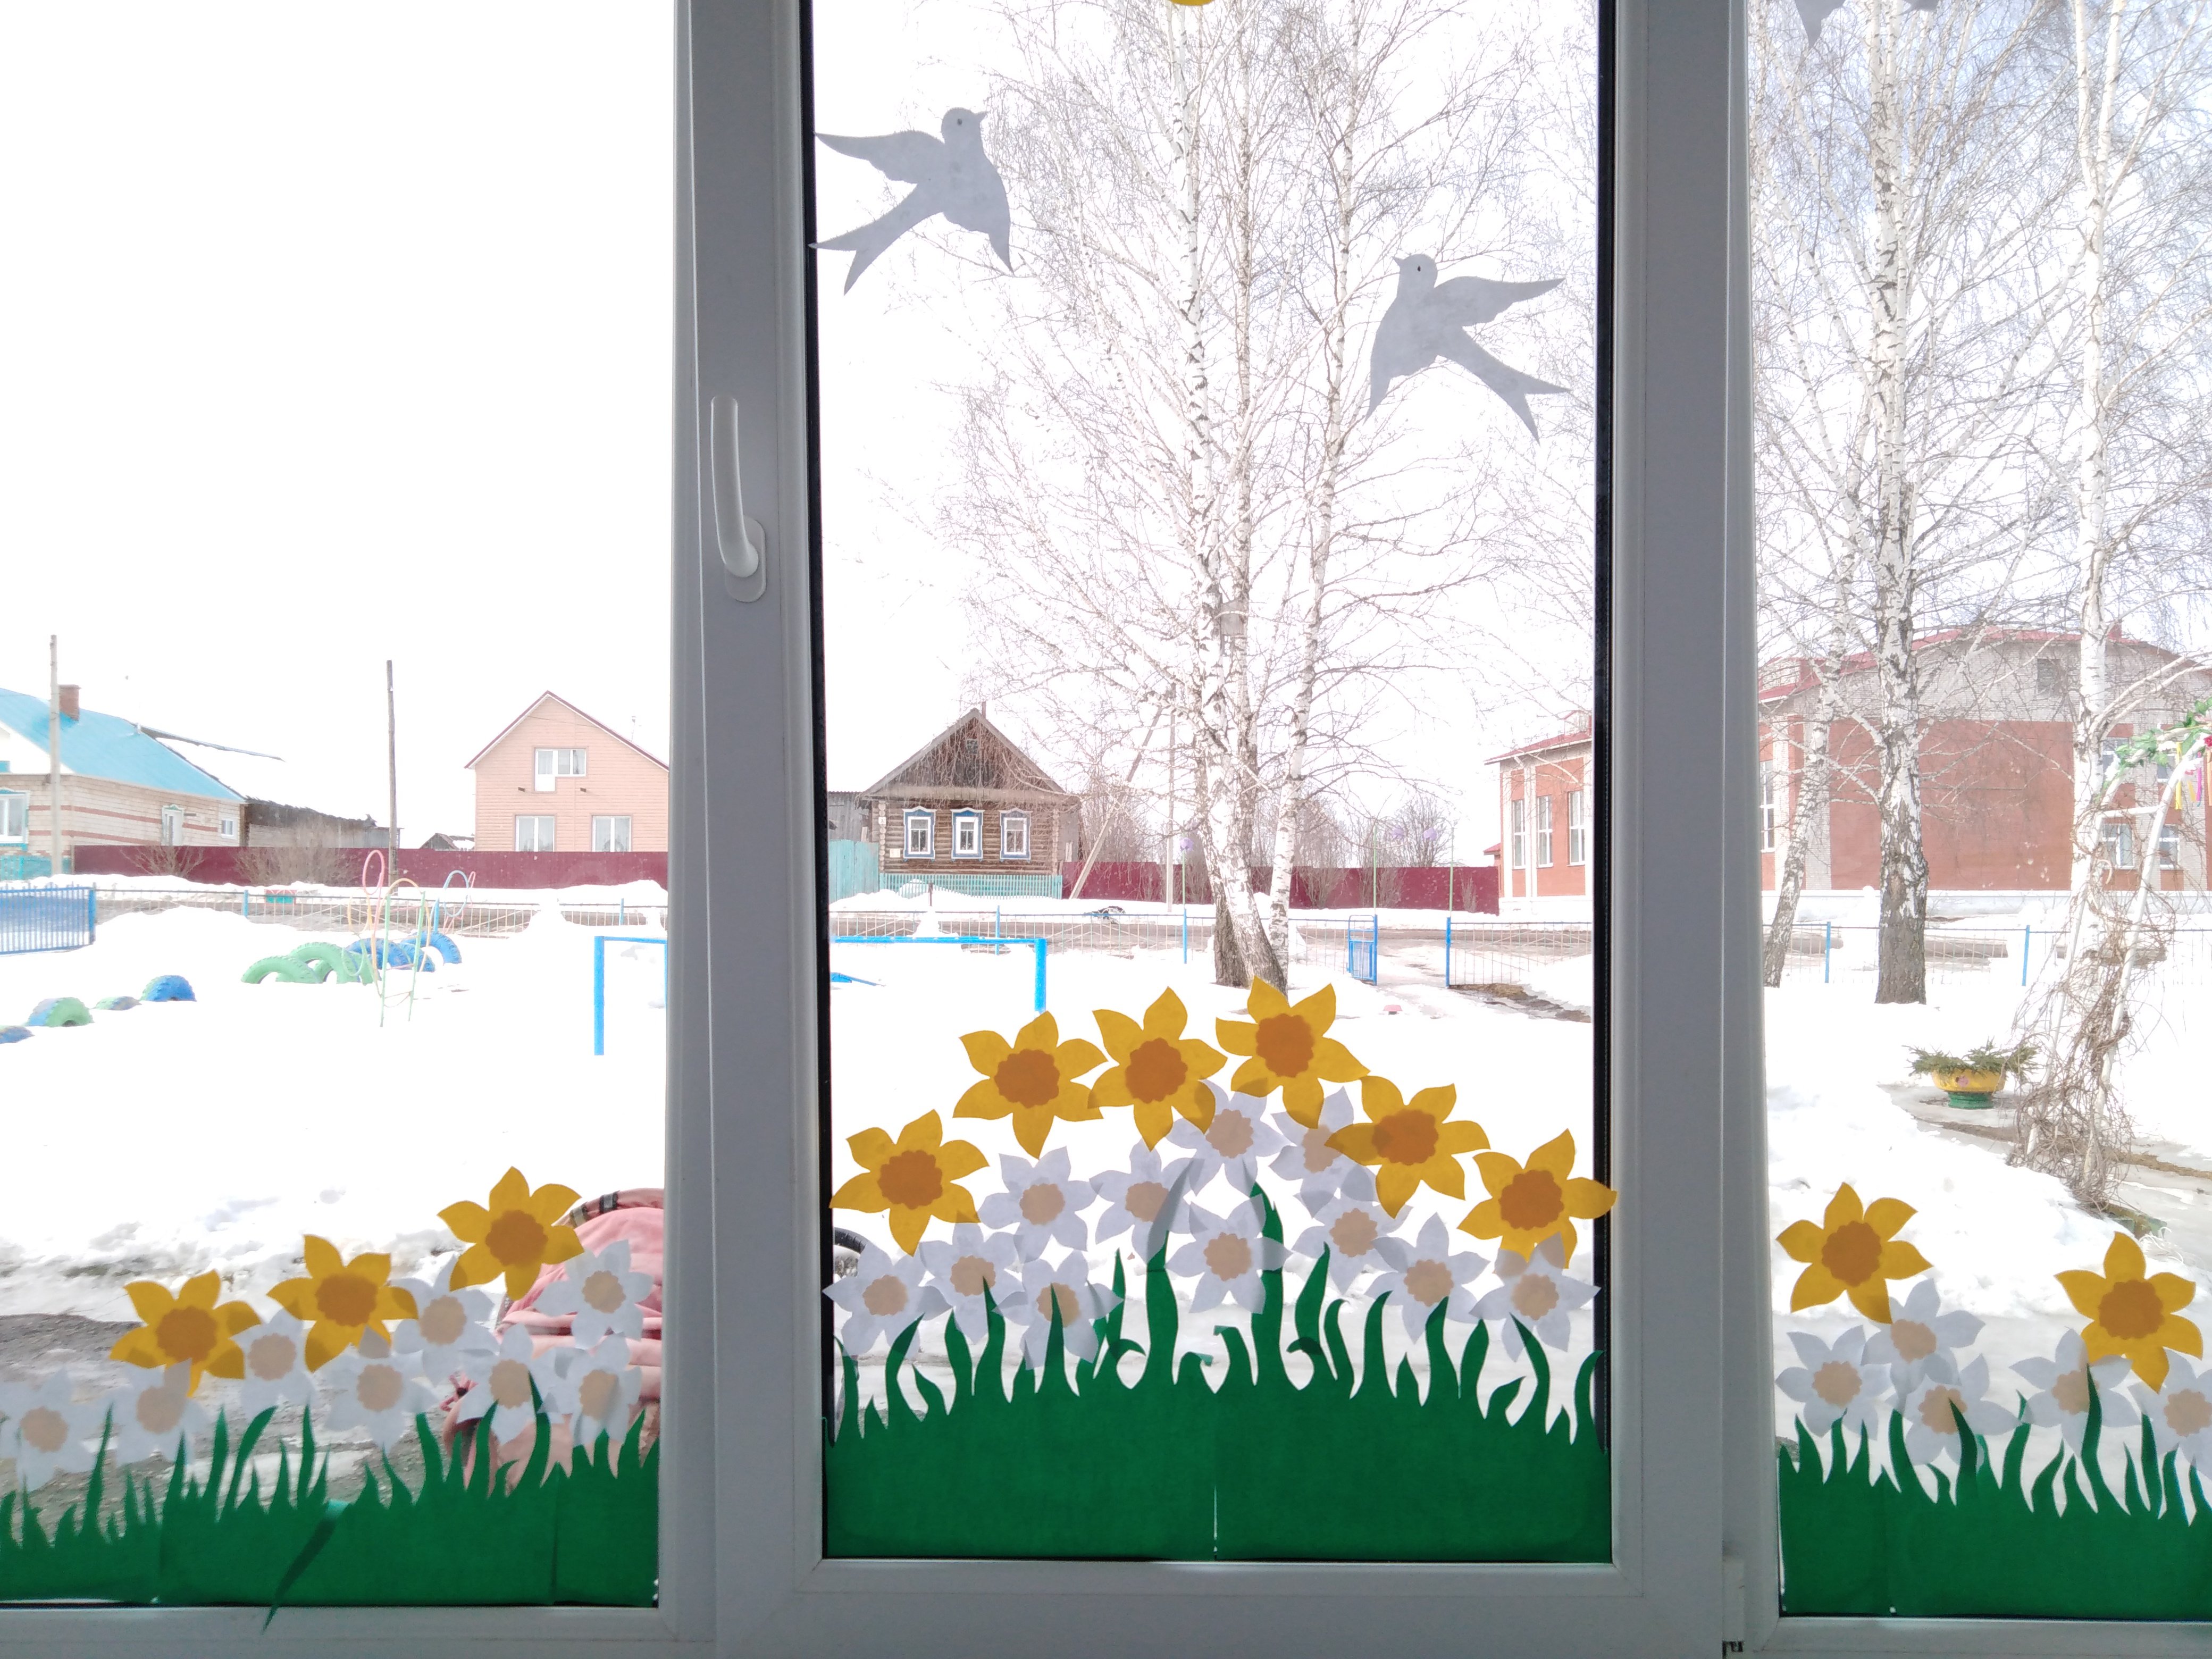 Оформление весна детский сад зал